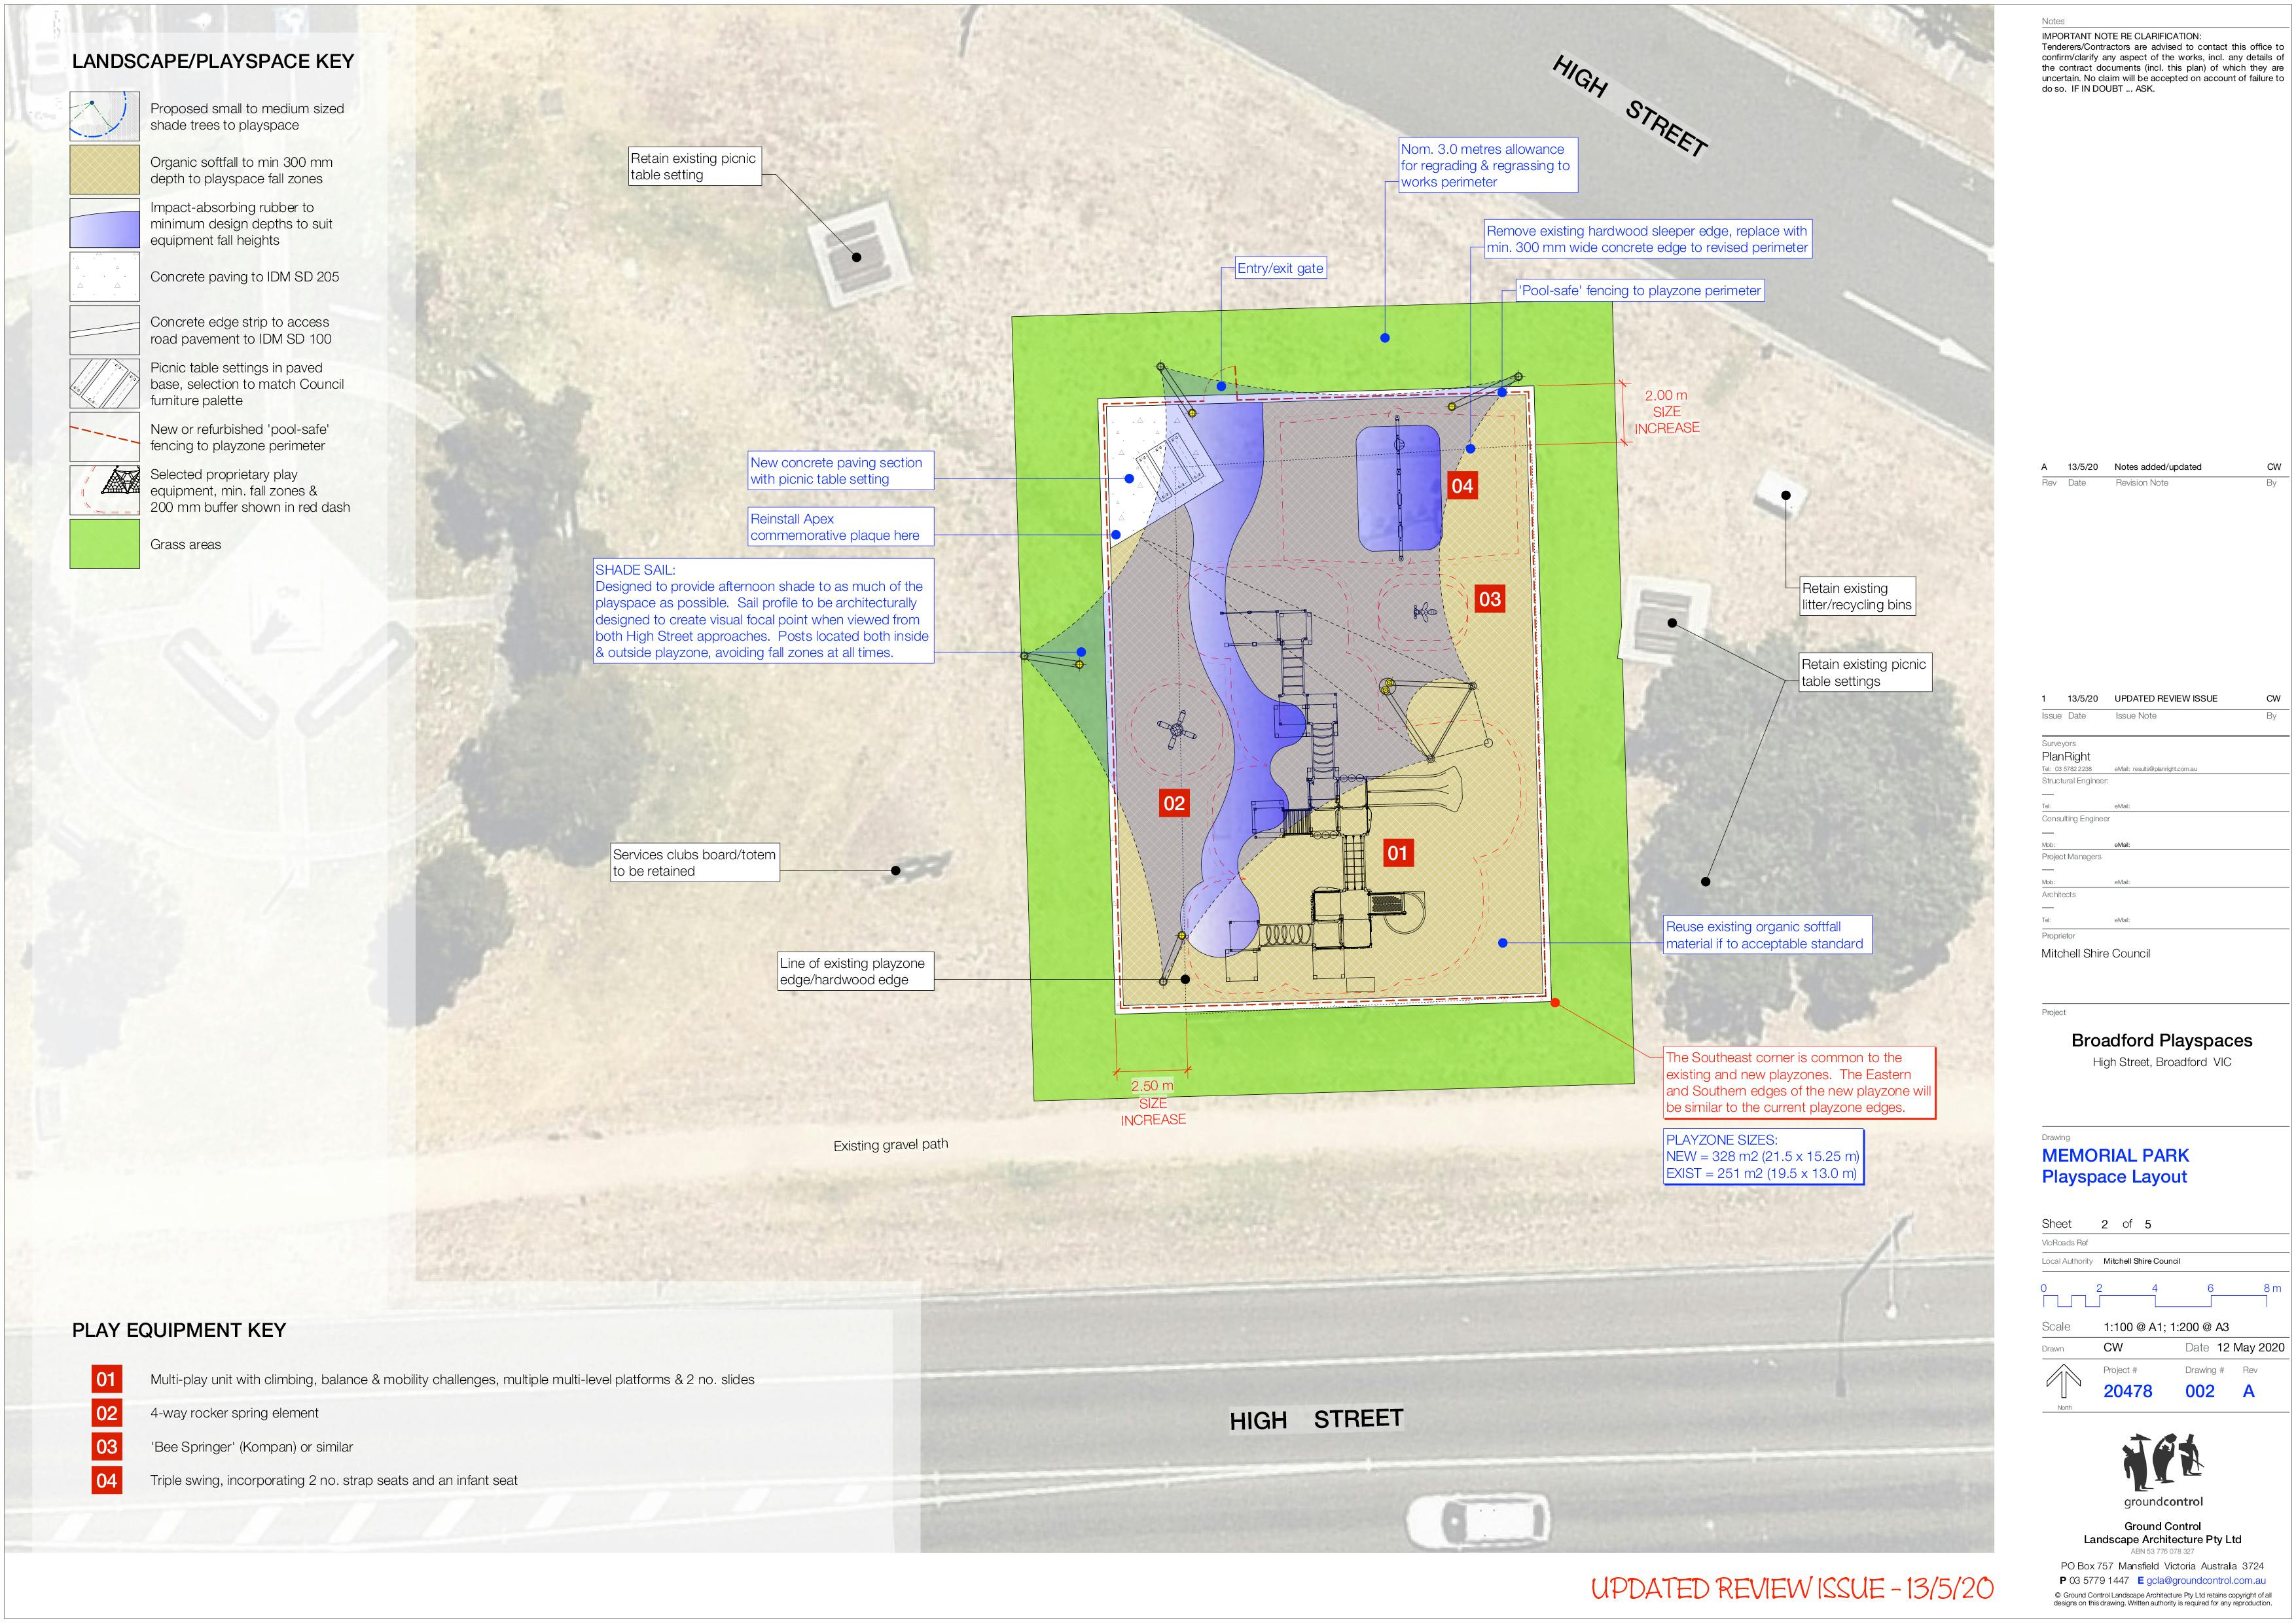 002-Memorial-park-playspace-layout.jpg